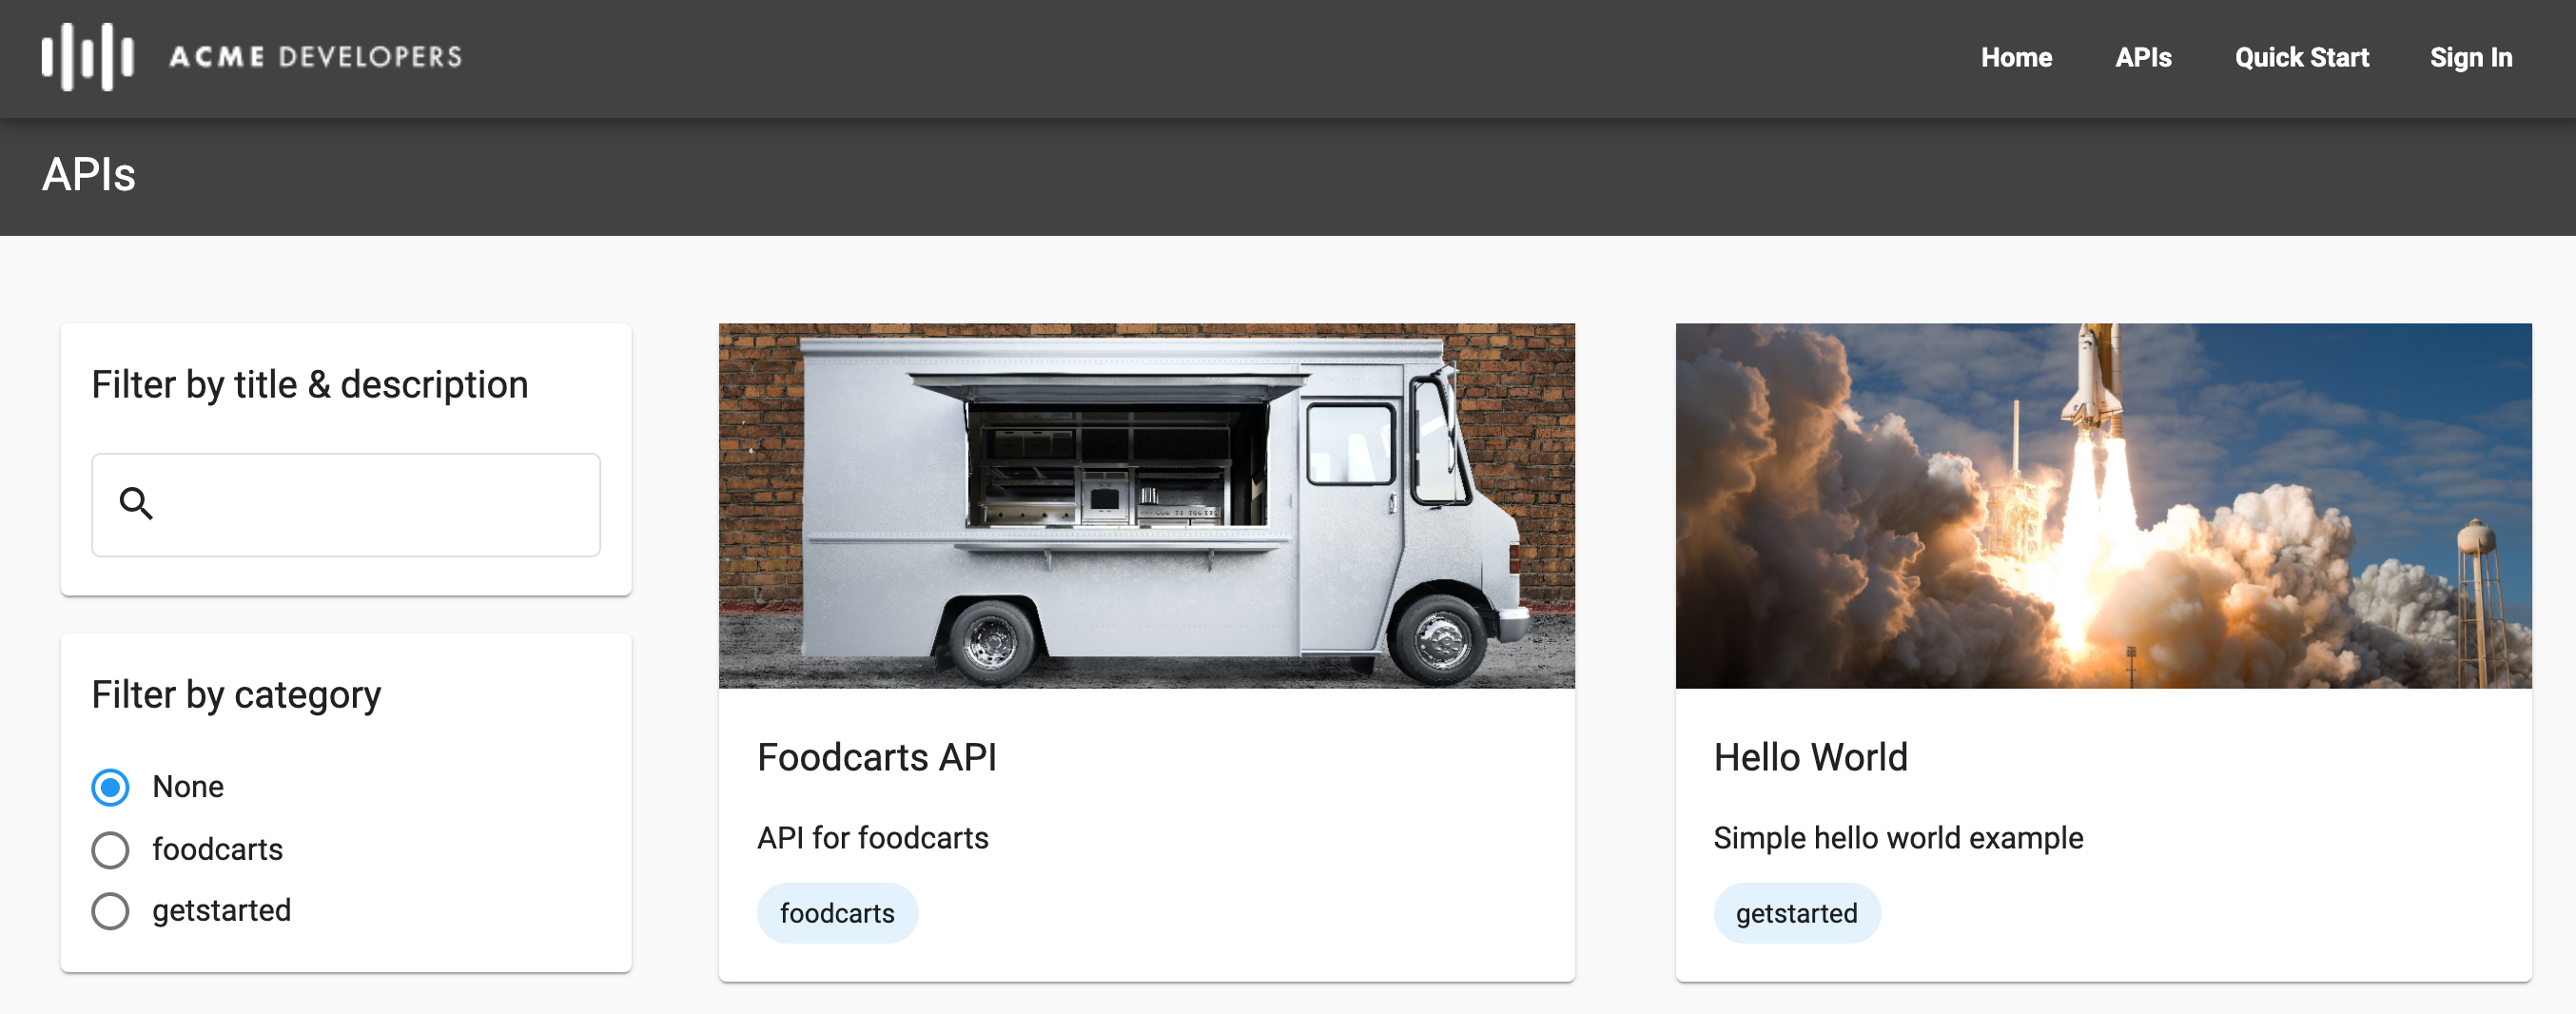 Grafik: Seite „APIs“ im Live-Portal mit zwei Kategorien und verwendeten Bildern